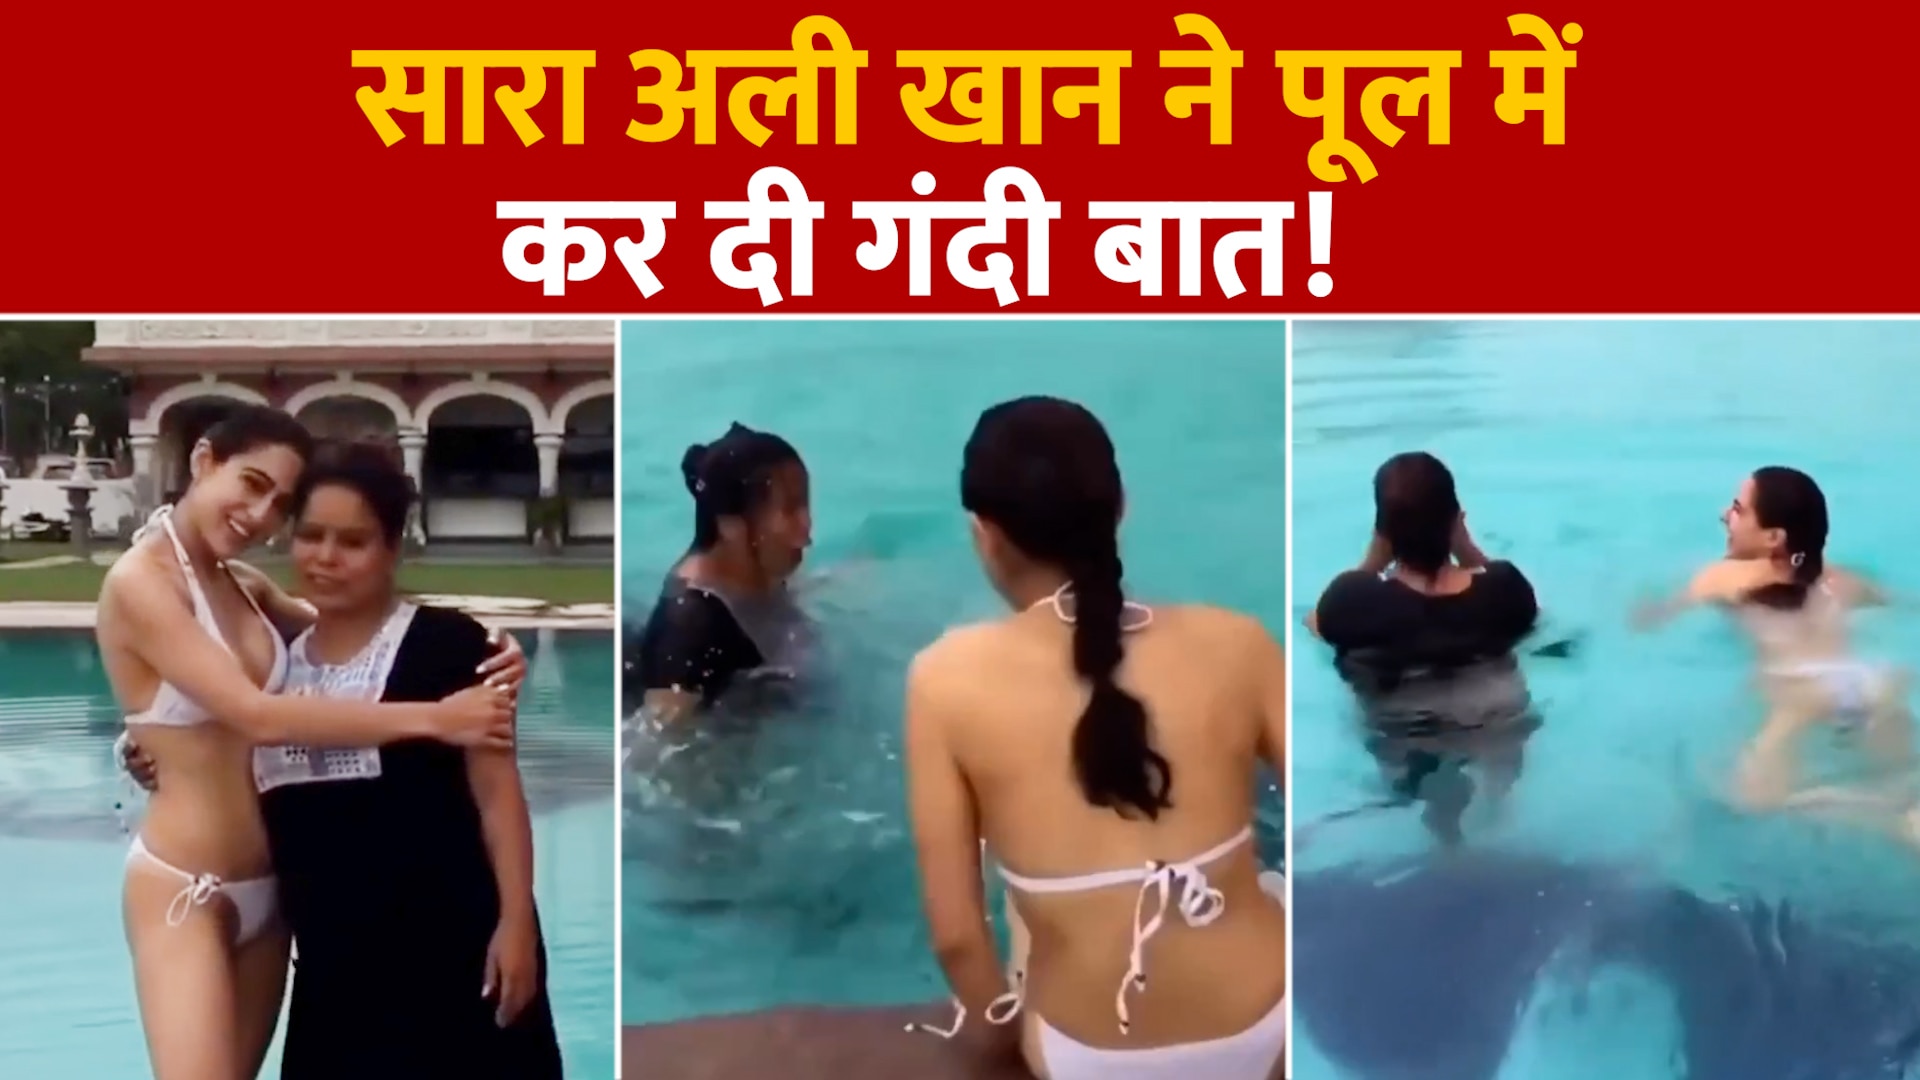 Sara Ali Khan did prank wearing a bikini in the swimming pool users got  angry | Sara Ali Khan à¤¨à¥‡ à¤¬à¤¿à¤•à¤¿à¤¨à¥€ à¤ªà¤¹à¤¨ à¤¸à¥à¤µà¤¿à¤®à¤¿à¤‚à¤— à¤ªà¥‚à¤² à¤®à¥‡à¤‚ à¤•à¤¿à¤¯à¤¾ à¤à¤¸à¤¾ à¤ªà¥à¤°à¥ˆà¤‚à¤•,  à¤¯à¥‚à¤œà¤°à¥à¤¸ à¤•à¥‹ à¤† à¤—à¤